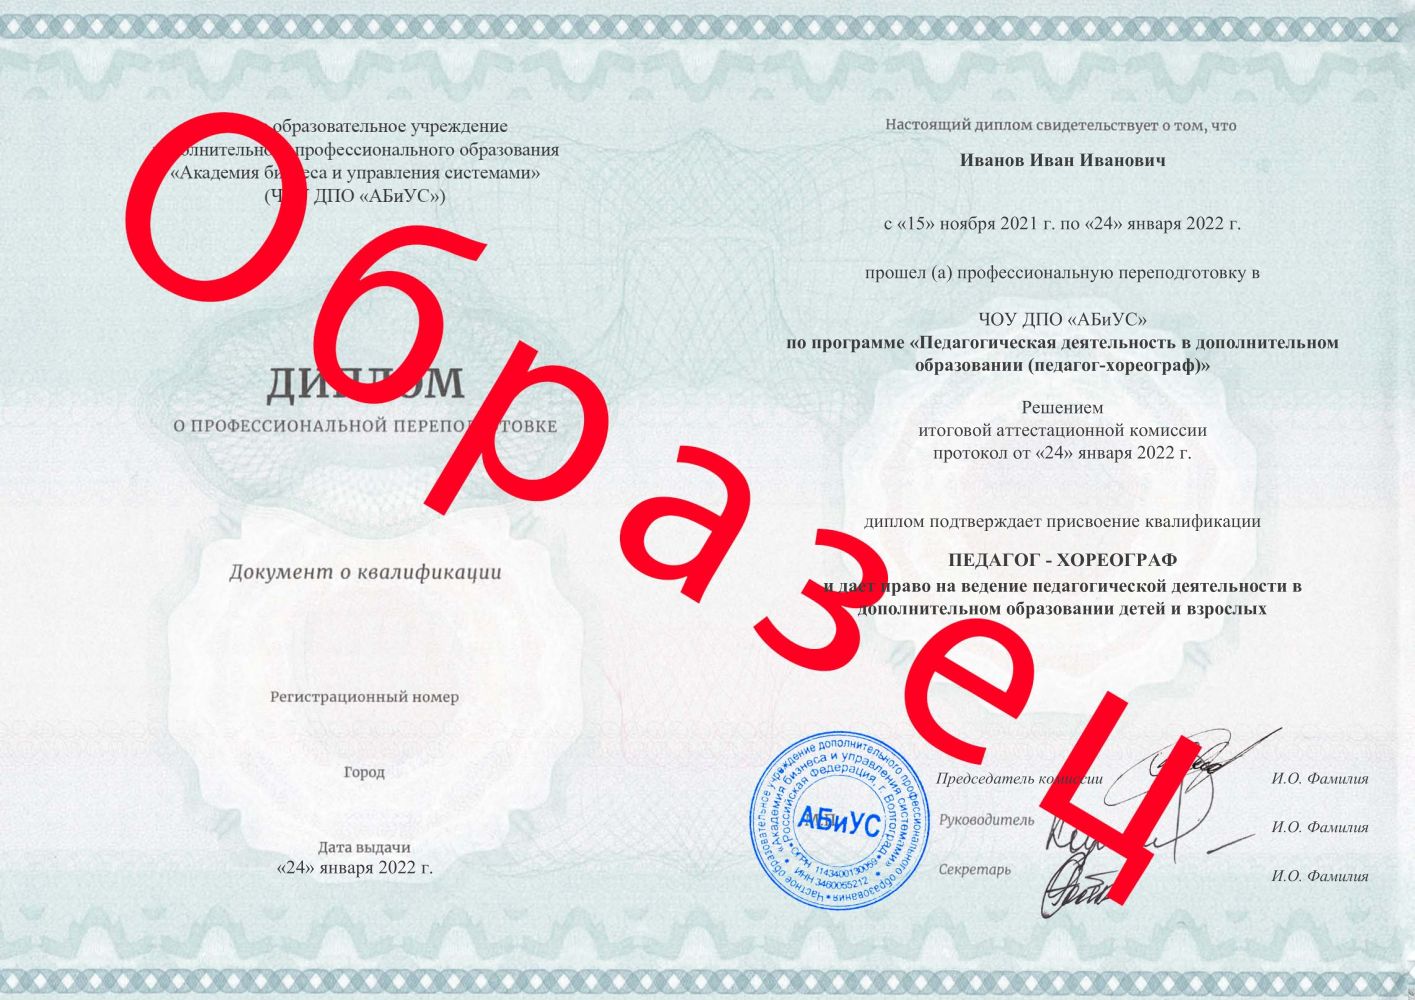 Диплом Педагогическая деятельность в дополнительном образовании (педагог-хореограф) 260 часов 8400 руб.